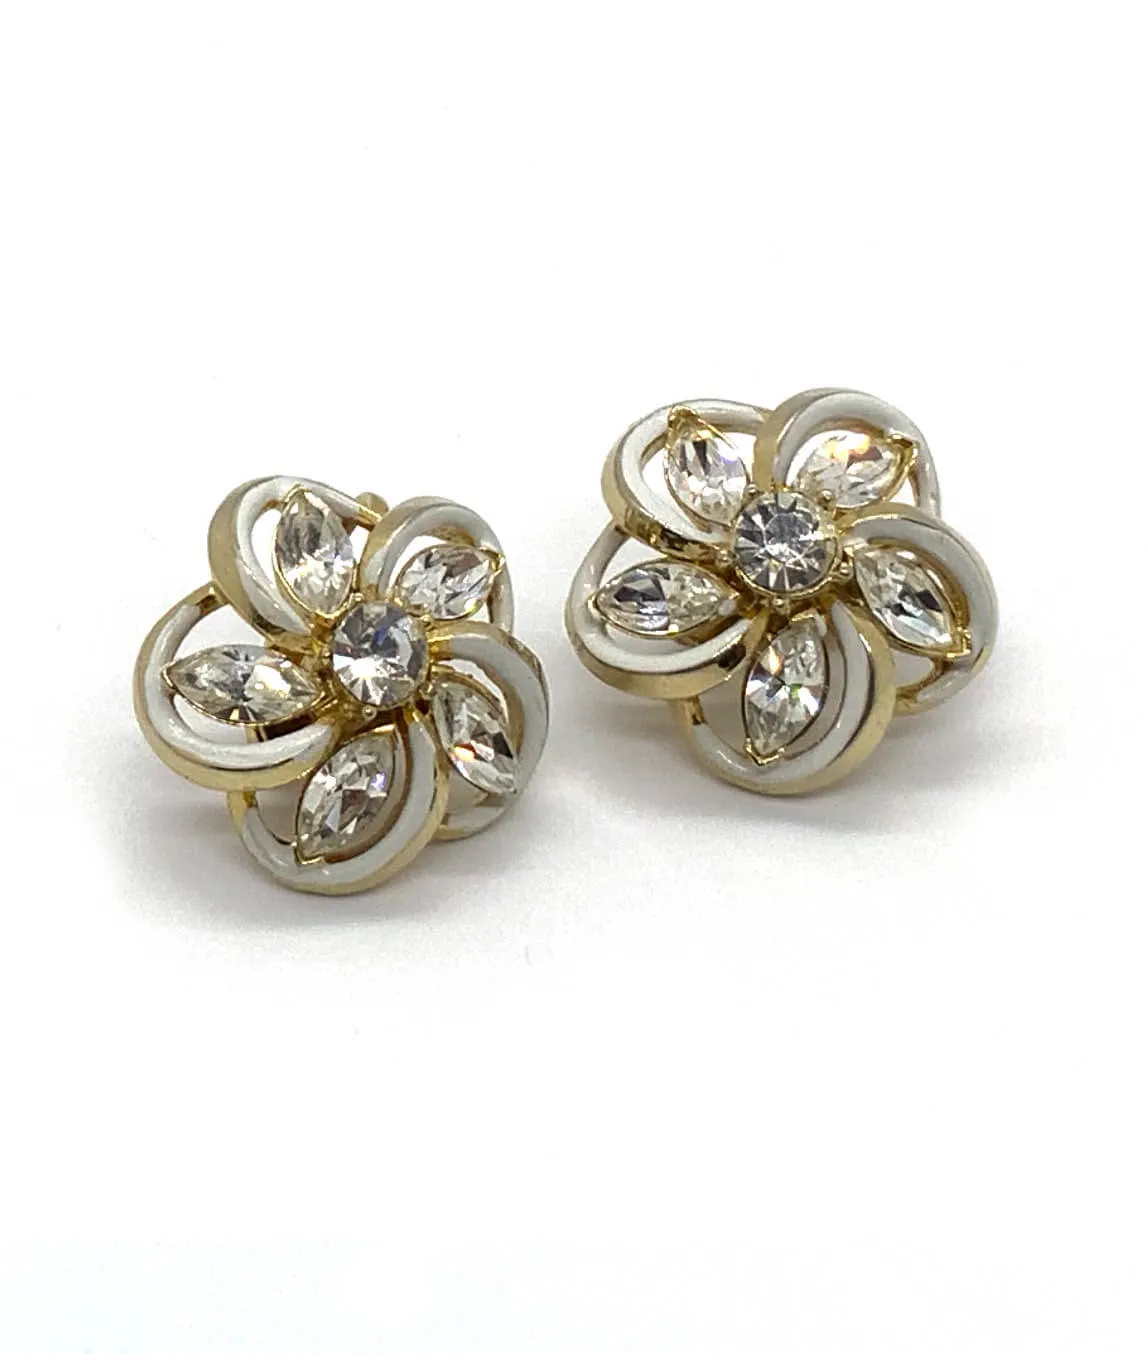 Vintage flower shaped earrings by Coro